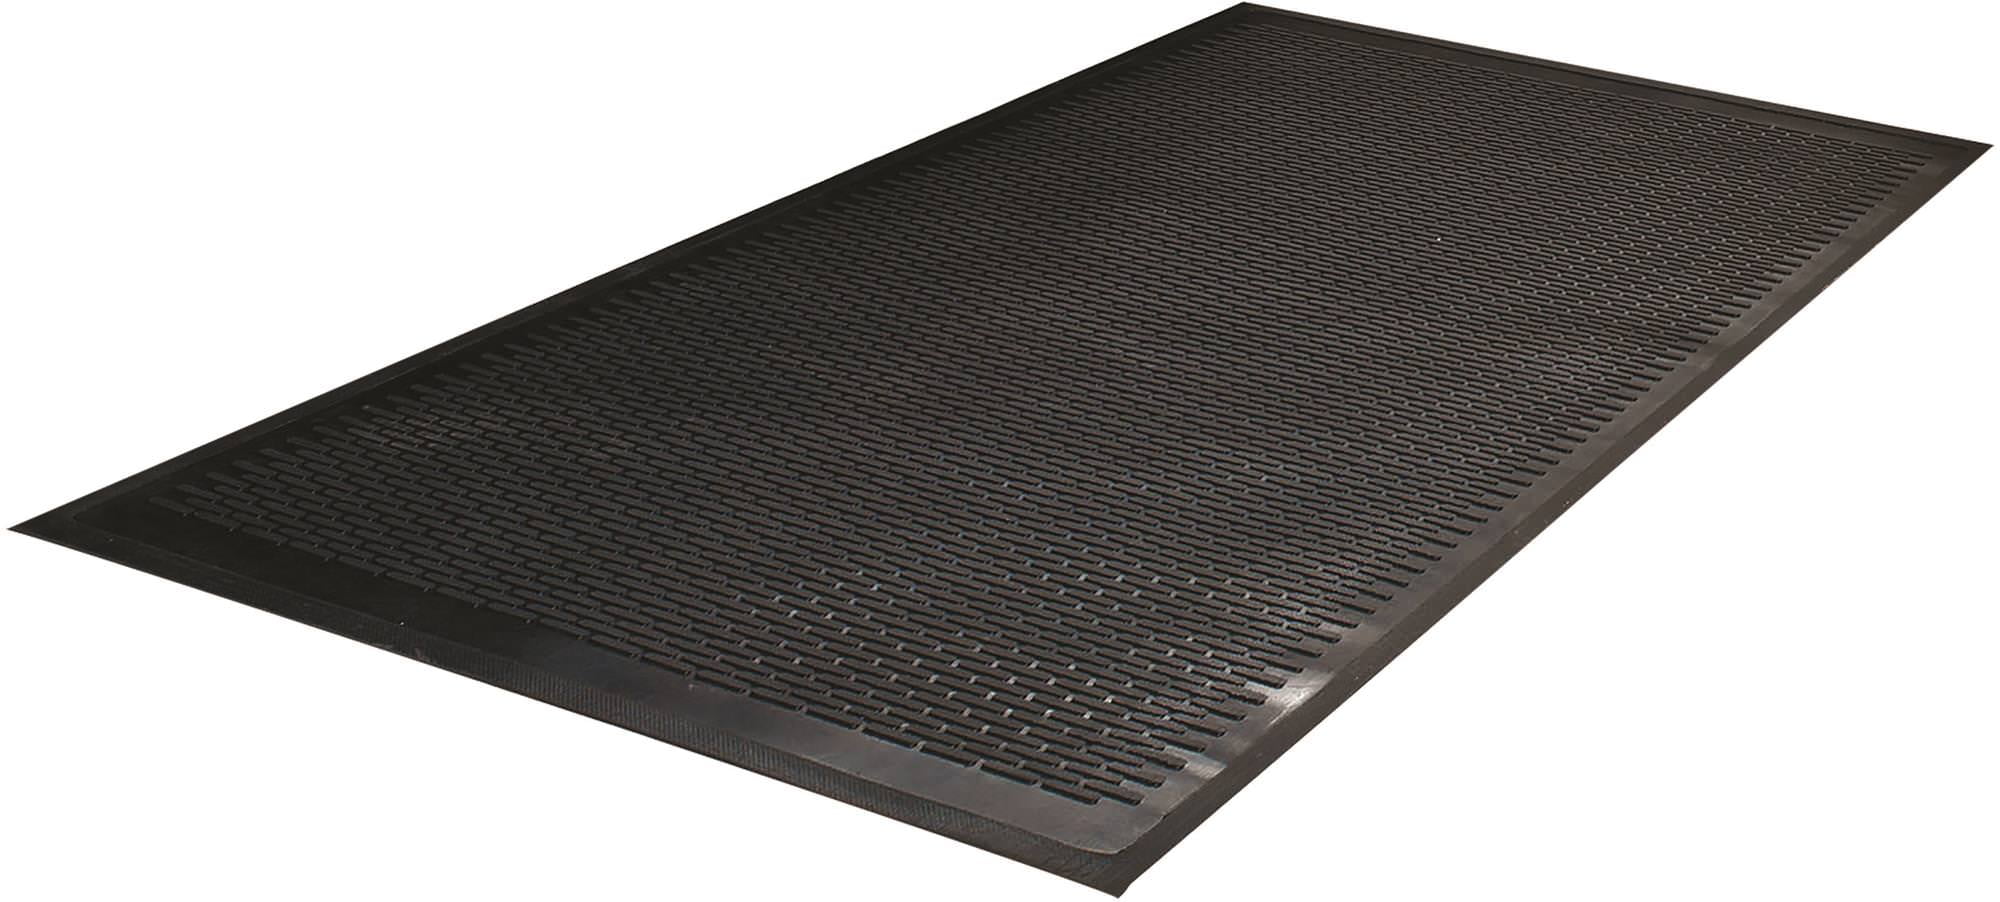 Guardian WaterGuard Indoor/Outdoor Wiper Scraper Floor Mat Charcoal Rubber/Nylon 3x10